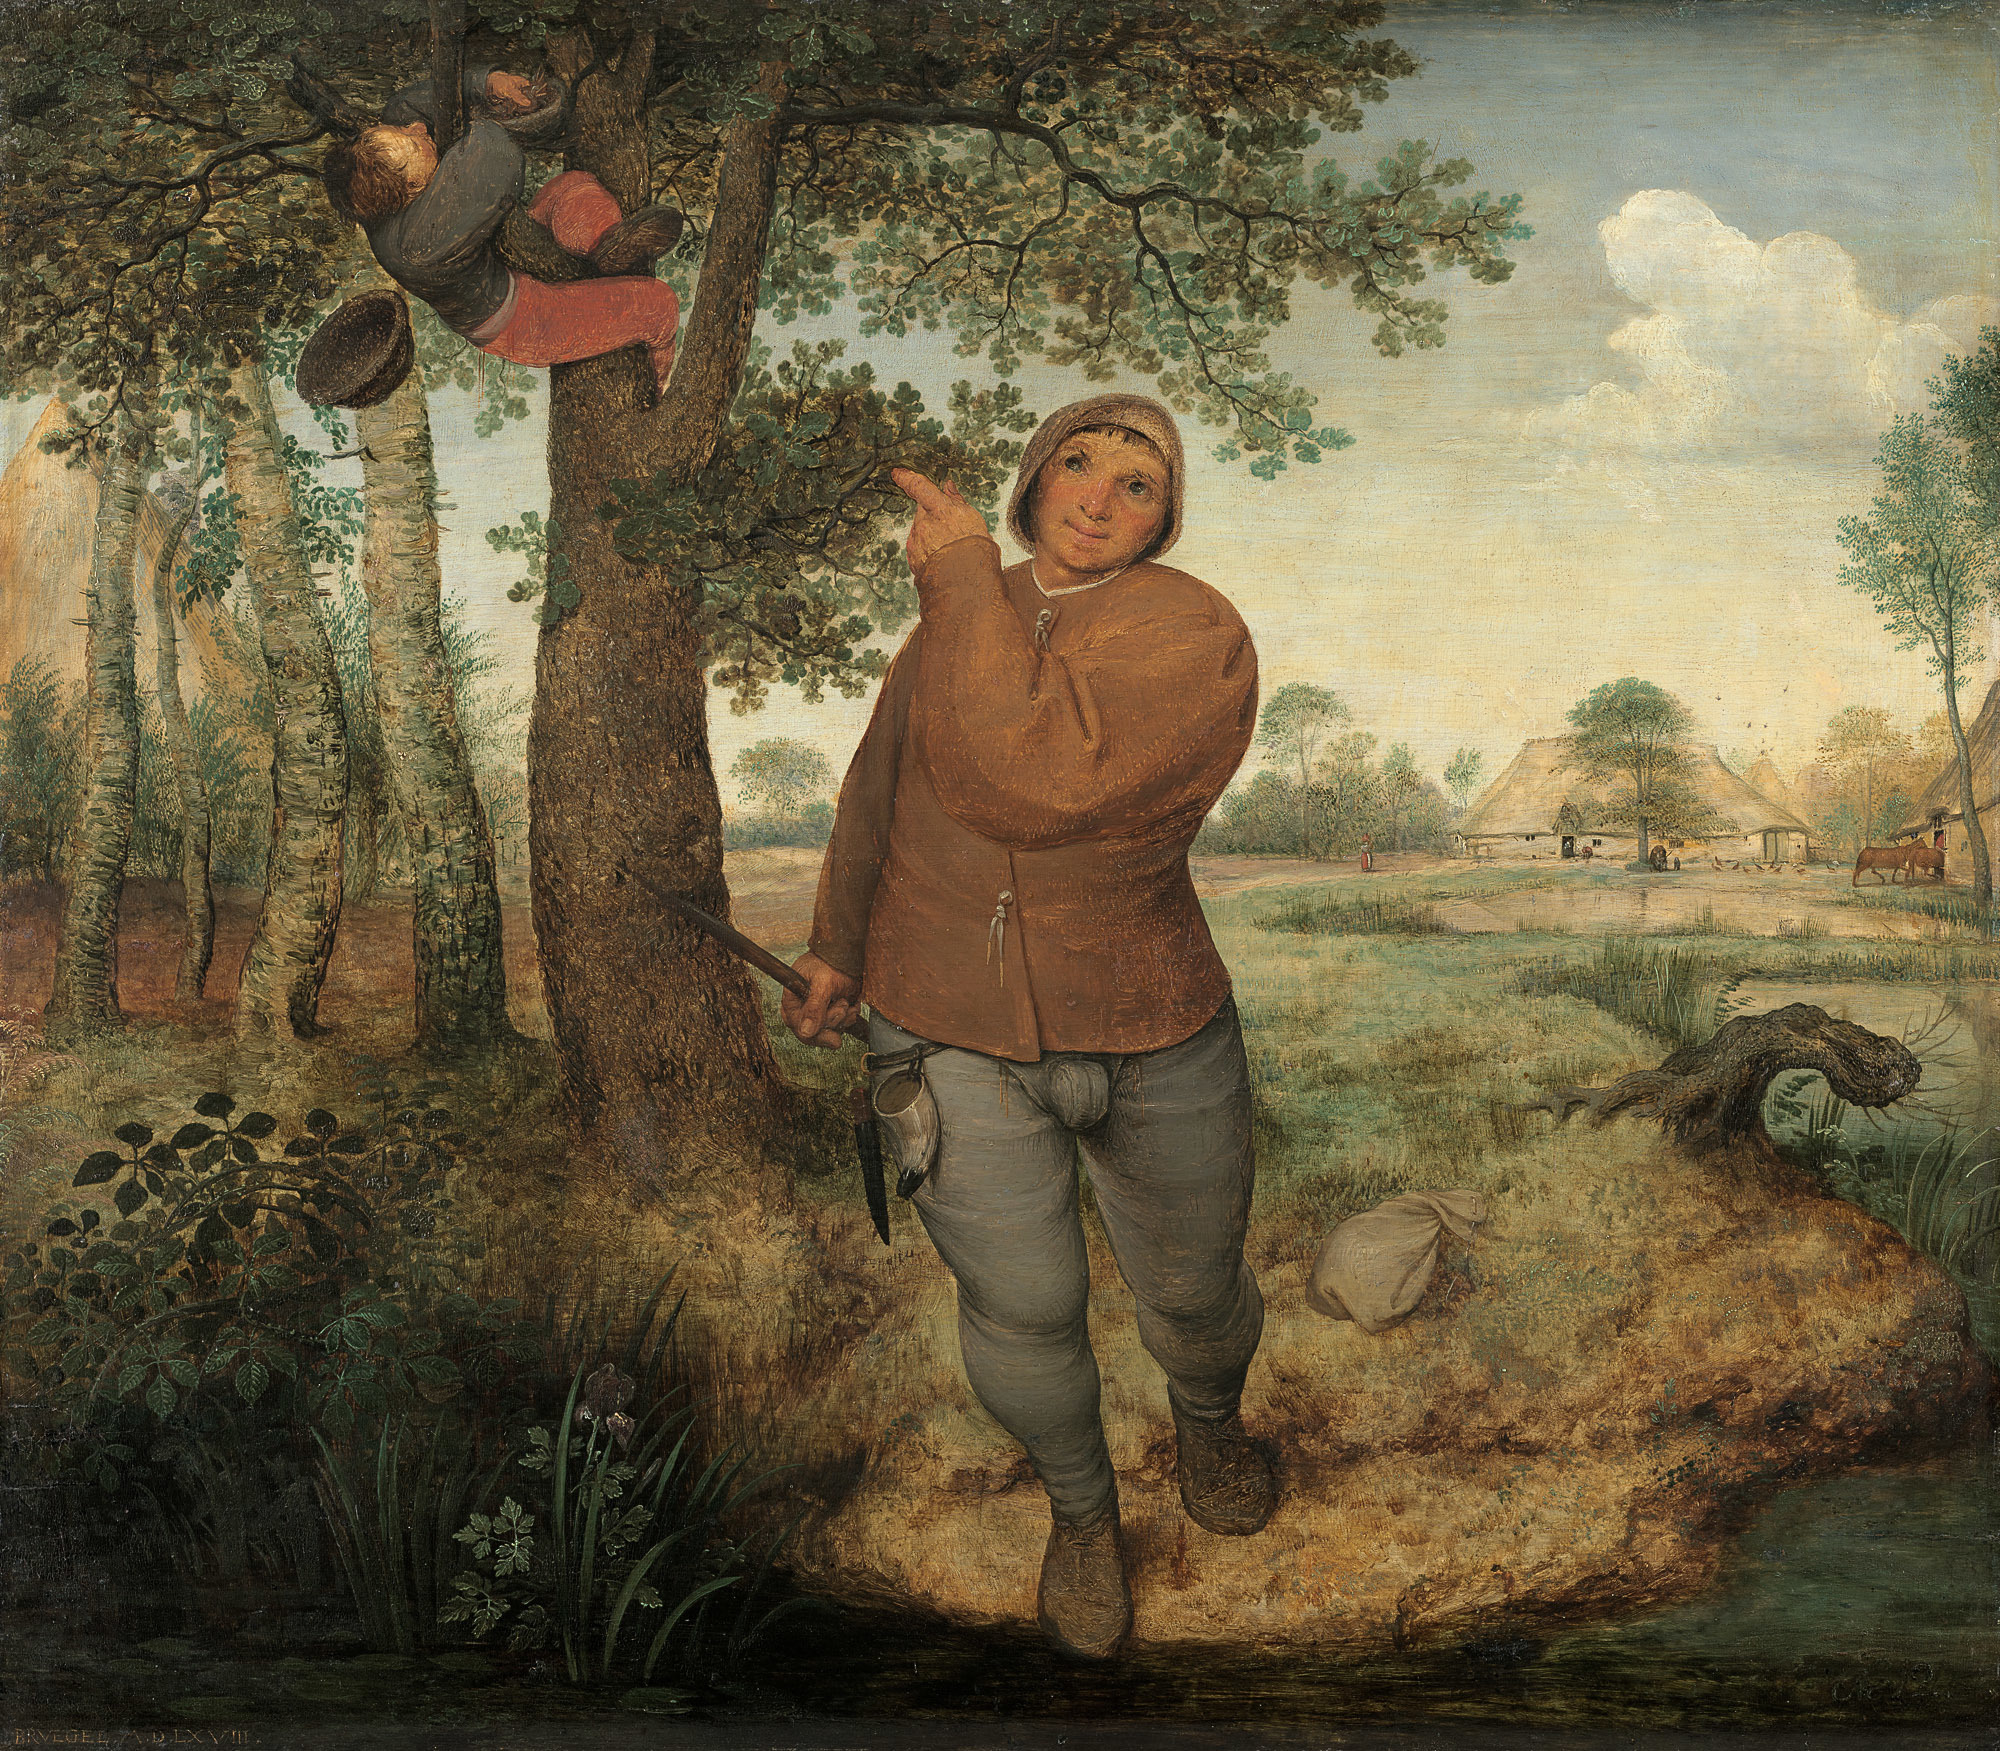 Złodziej gniazd by Pieter Bruegel the Elder - 1568 - 59,3 cm × 68,3 cm 